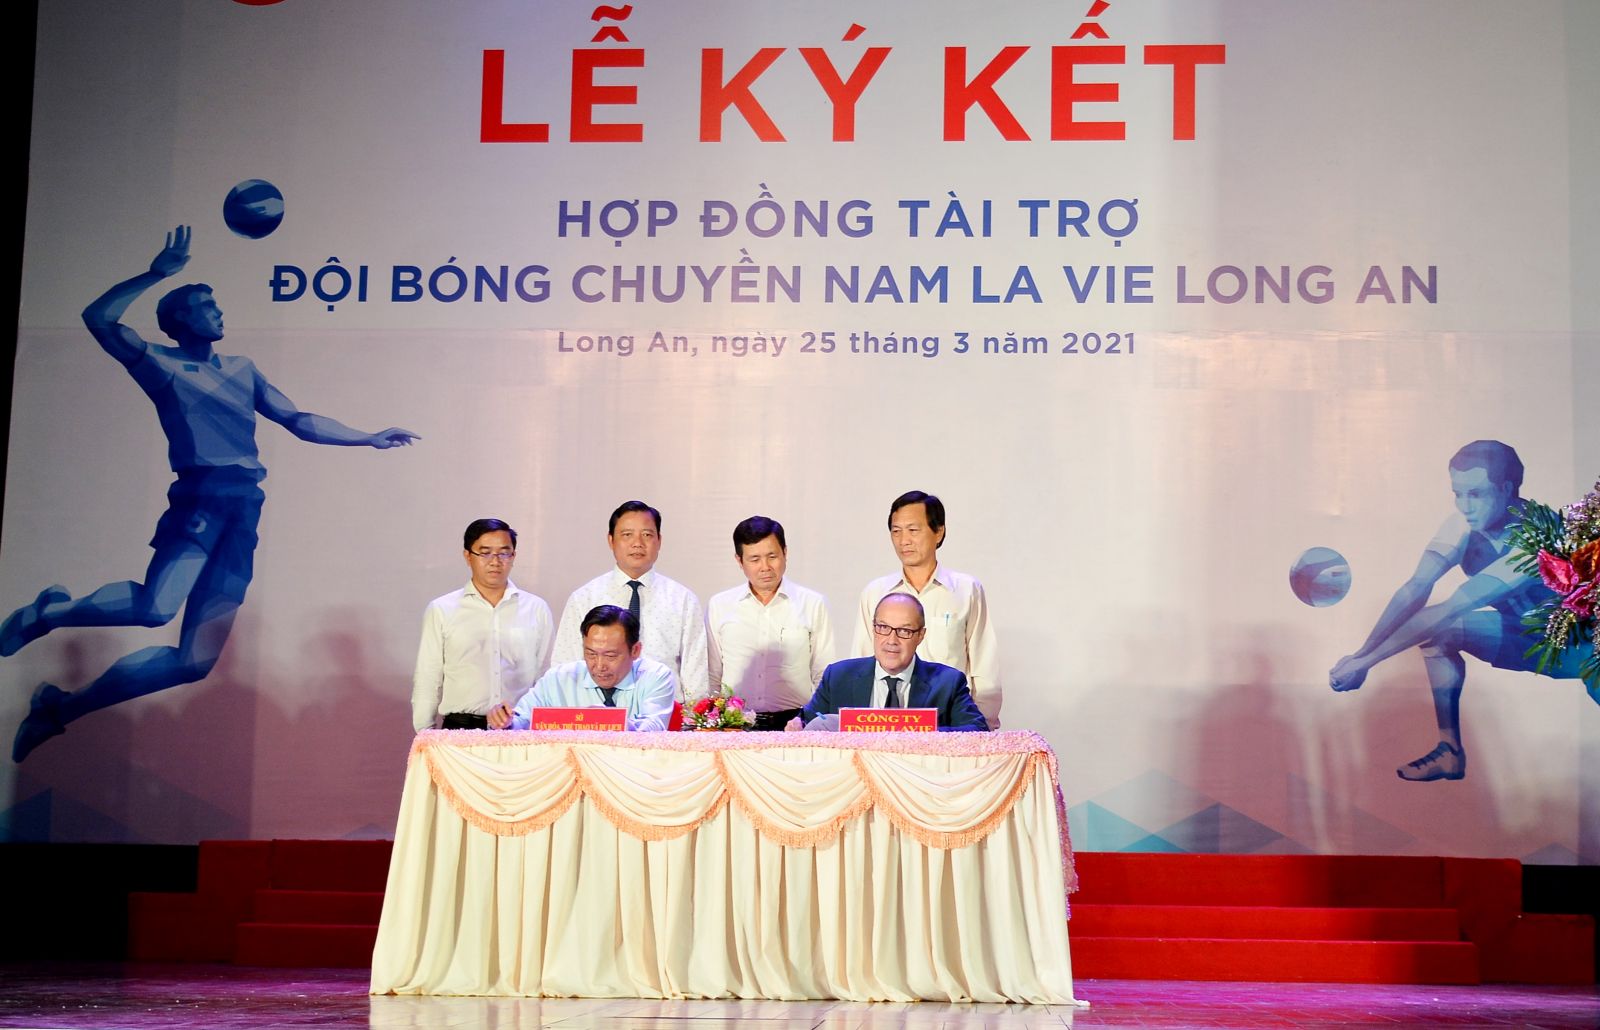 Công ty TNHH La Vie Long An chính thức trở thành nhà tài trợ cho Đội Bóng chuyền nam Long An với bản hợp đồng 5 năm trị giá 10 tỉ đồng